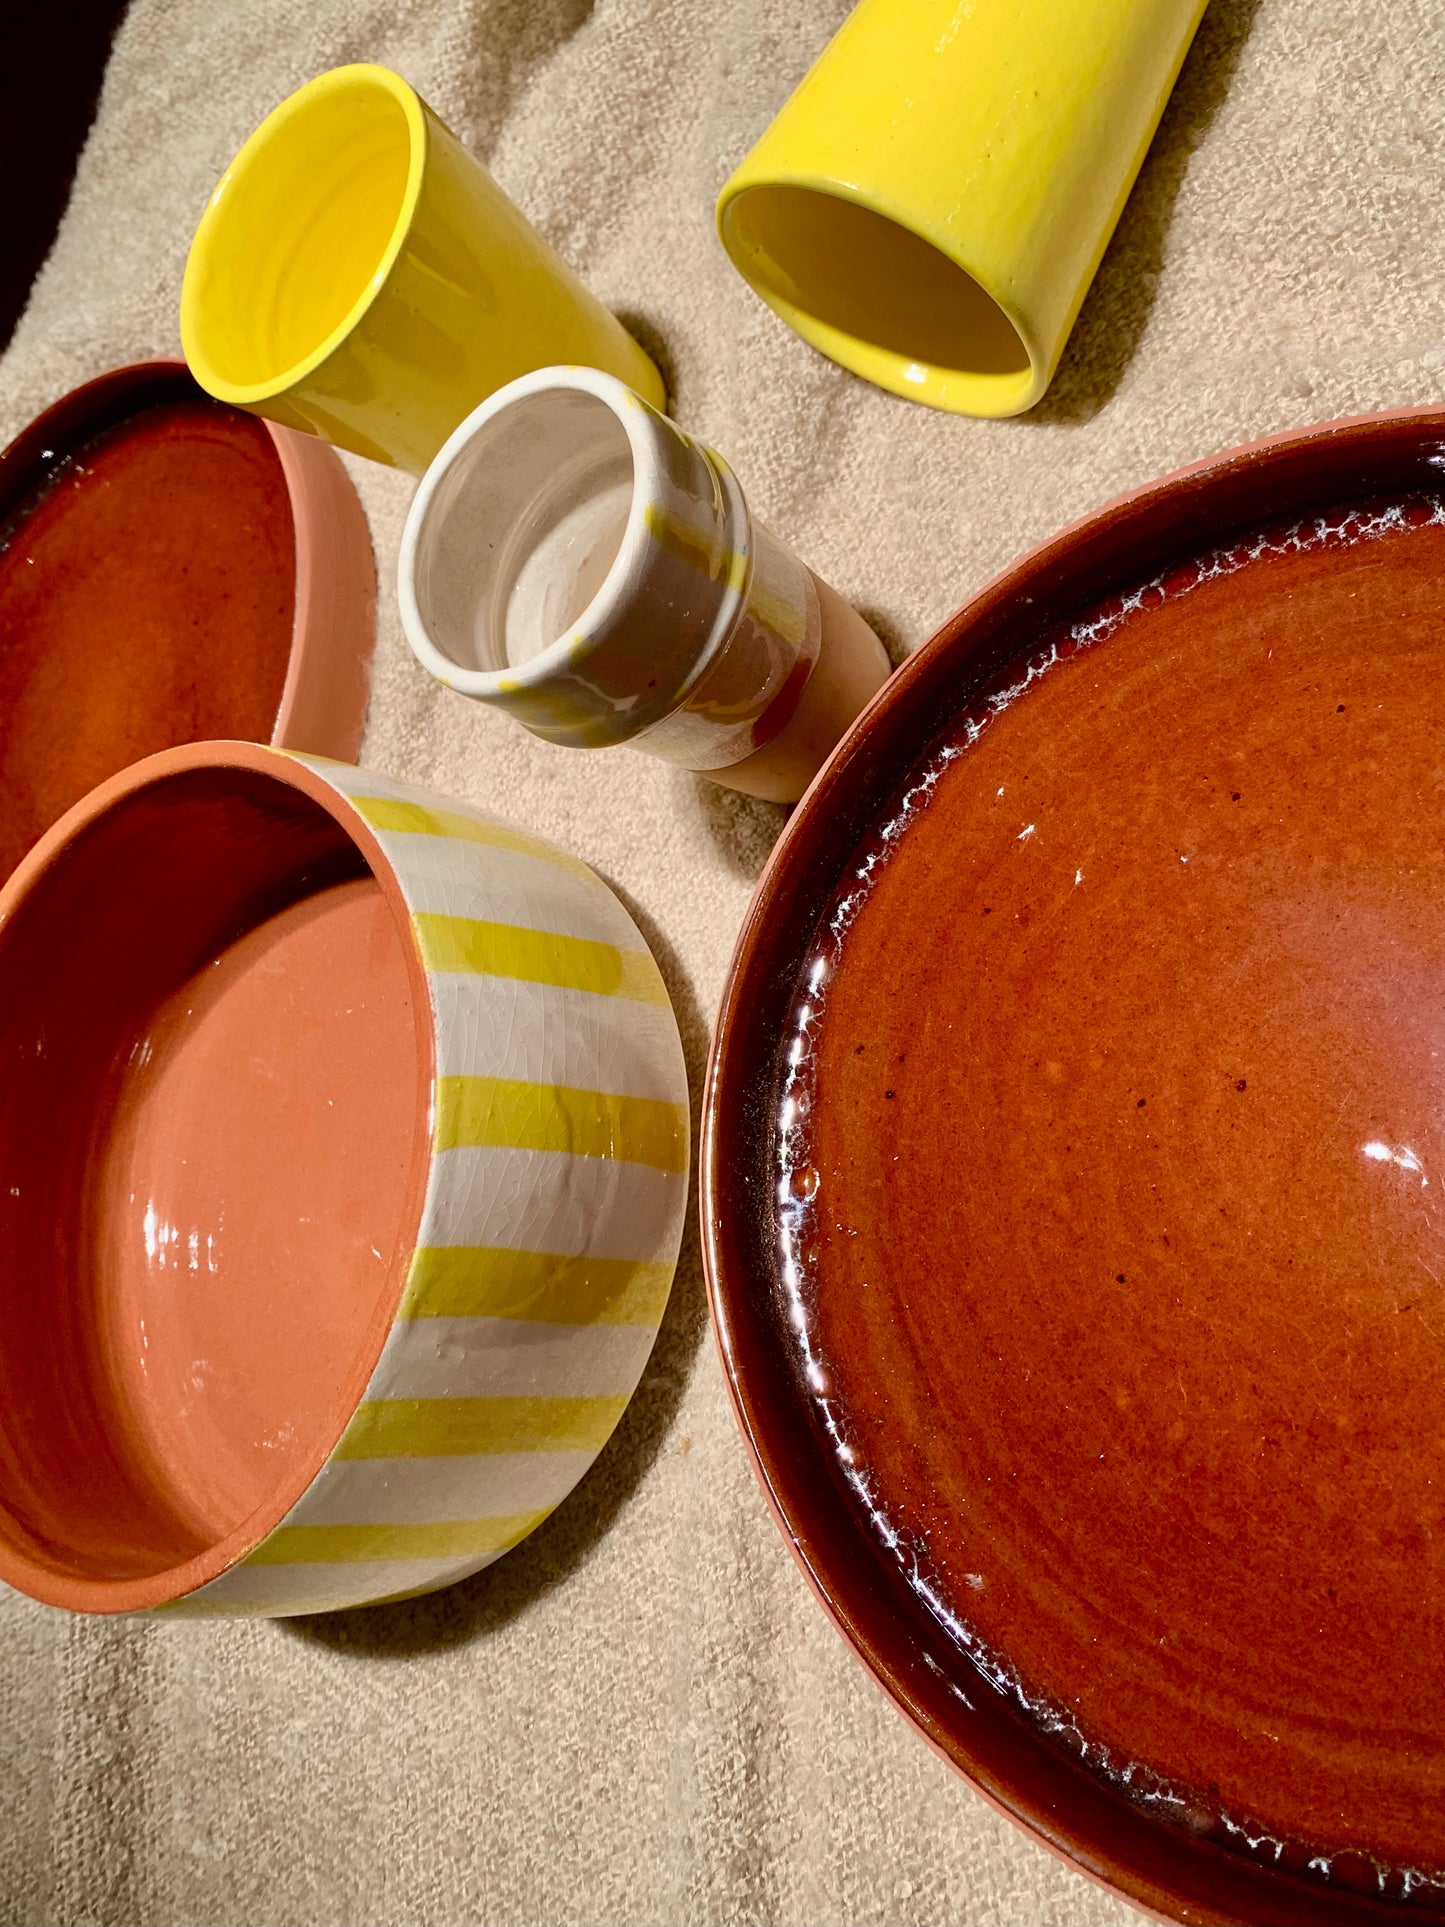 Marokkaans aardewerk borden. Prachtige unieke Marokkaans aardewerken borden. Terracotta kleur en donker bruin. Zijn uniek. Zeer leuk om met andere borden te combineren. 100% handmade.